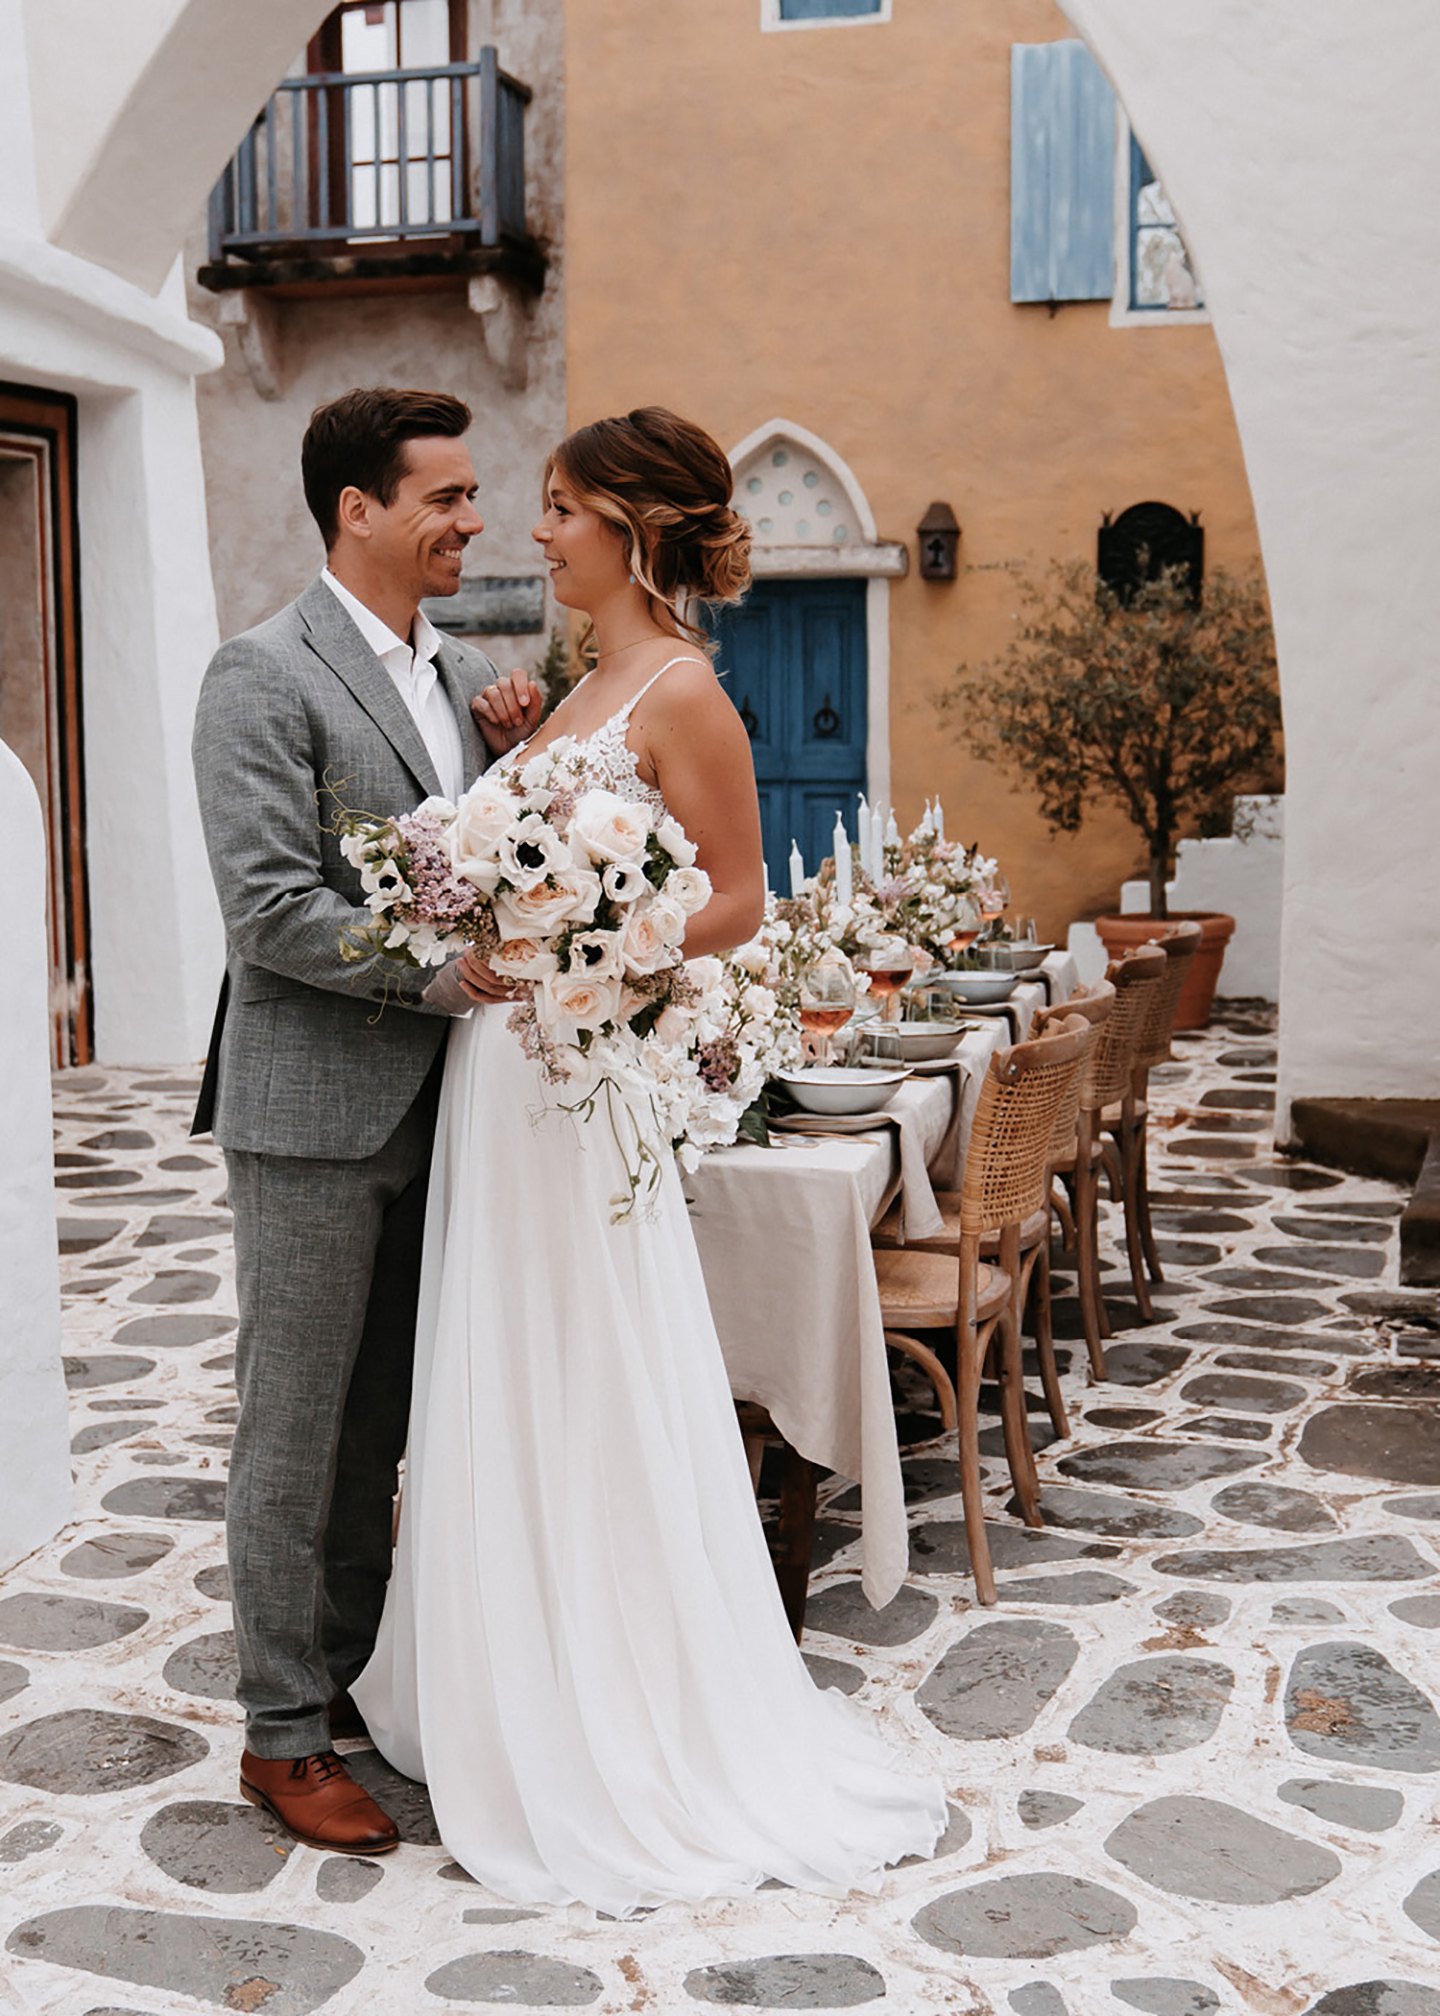 Das glückliche Hochzeitspaar aus Braut und Bräutigam steht vor der Location mit gedecktem Hochzeitstisch und schaut sich verliebt an.